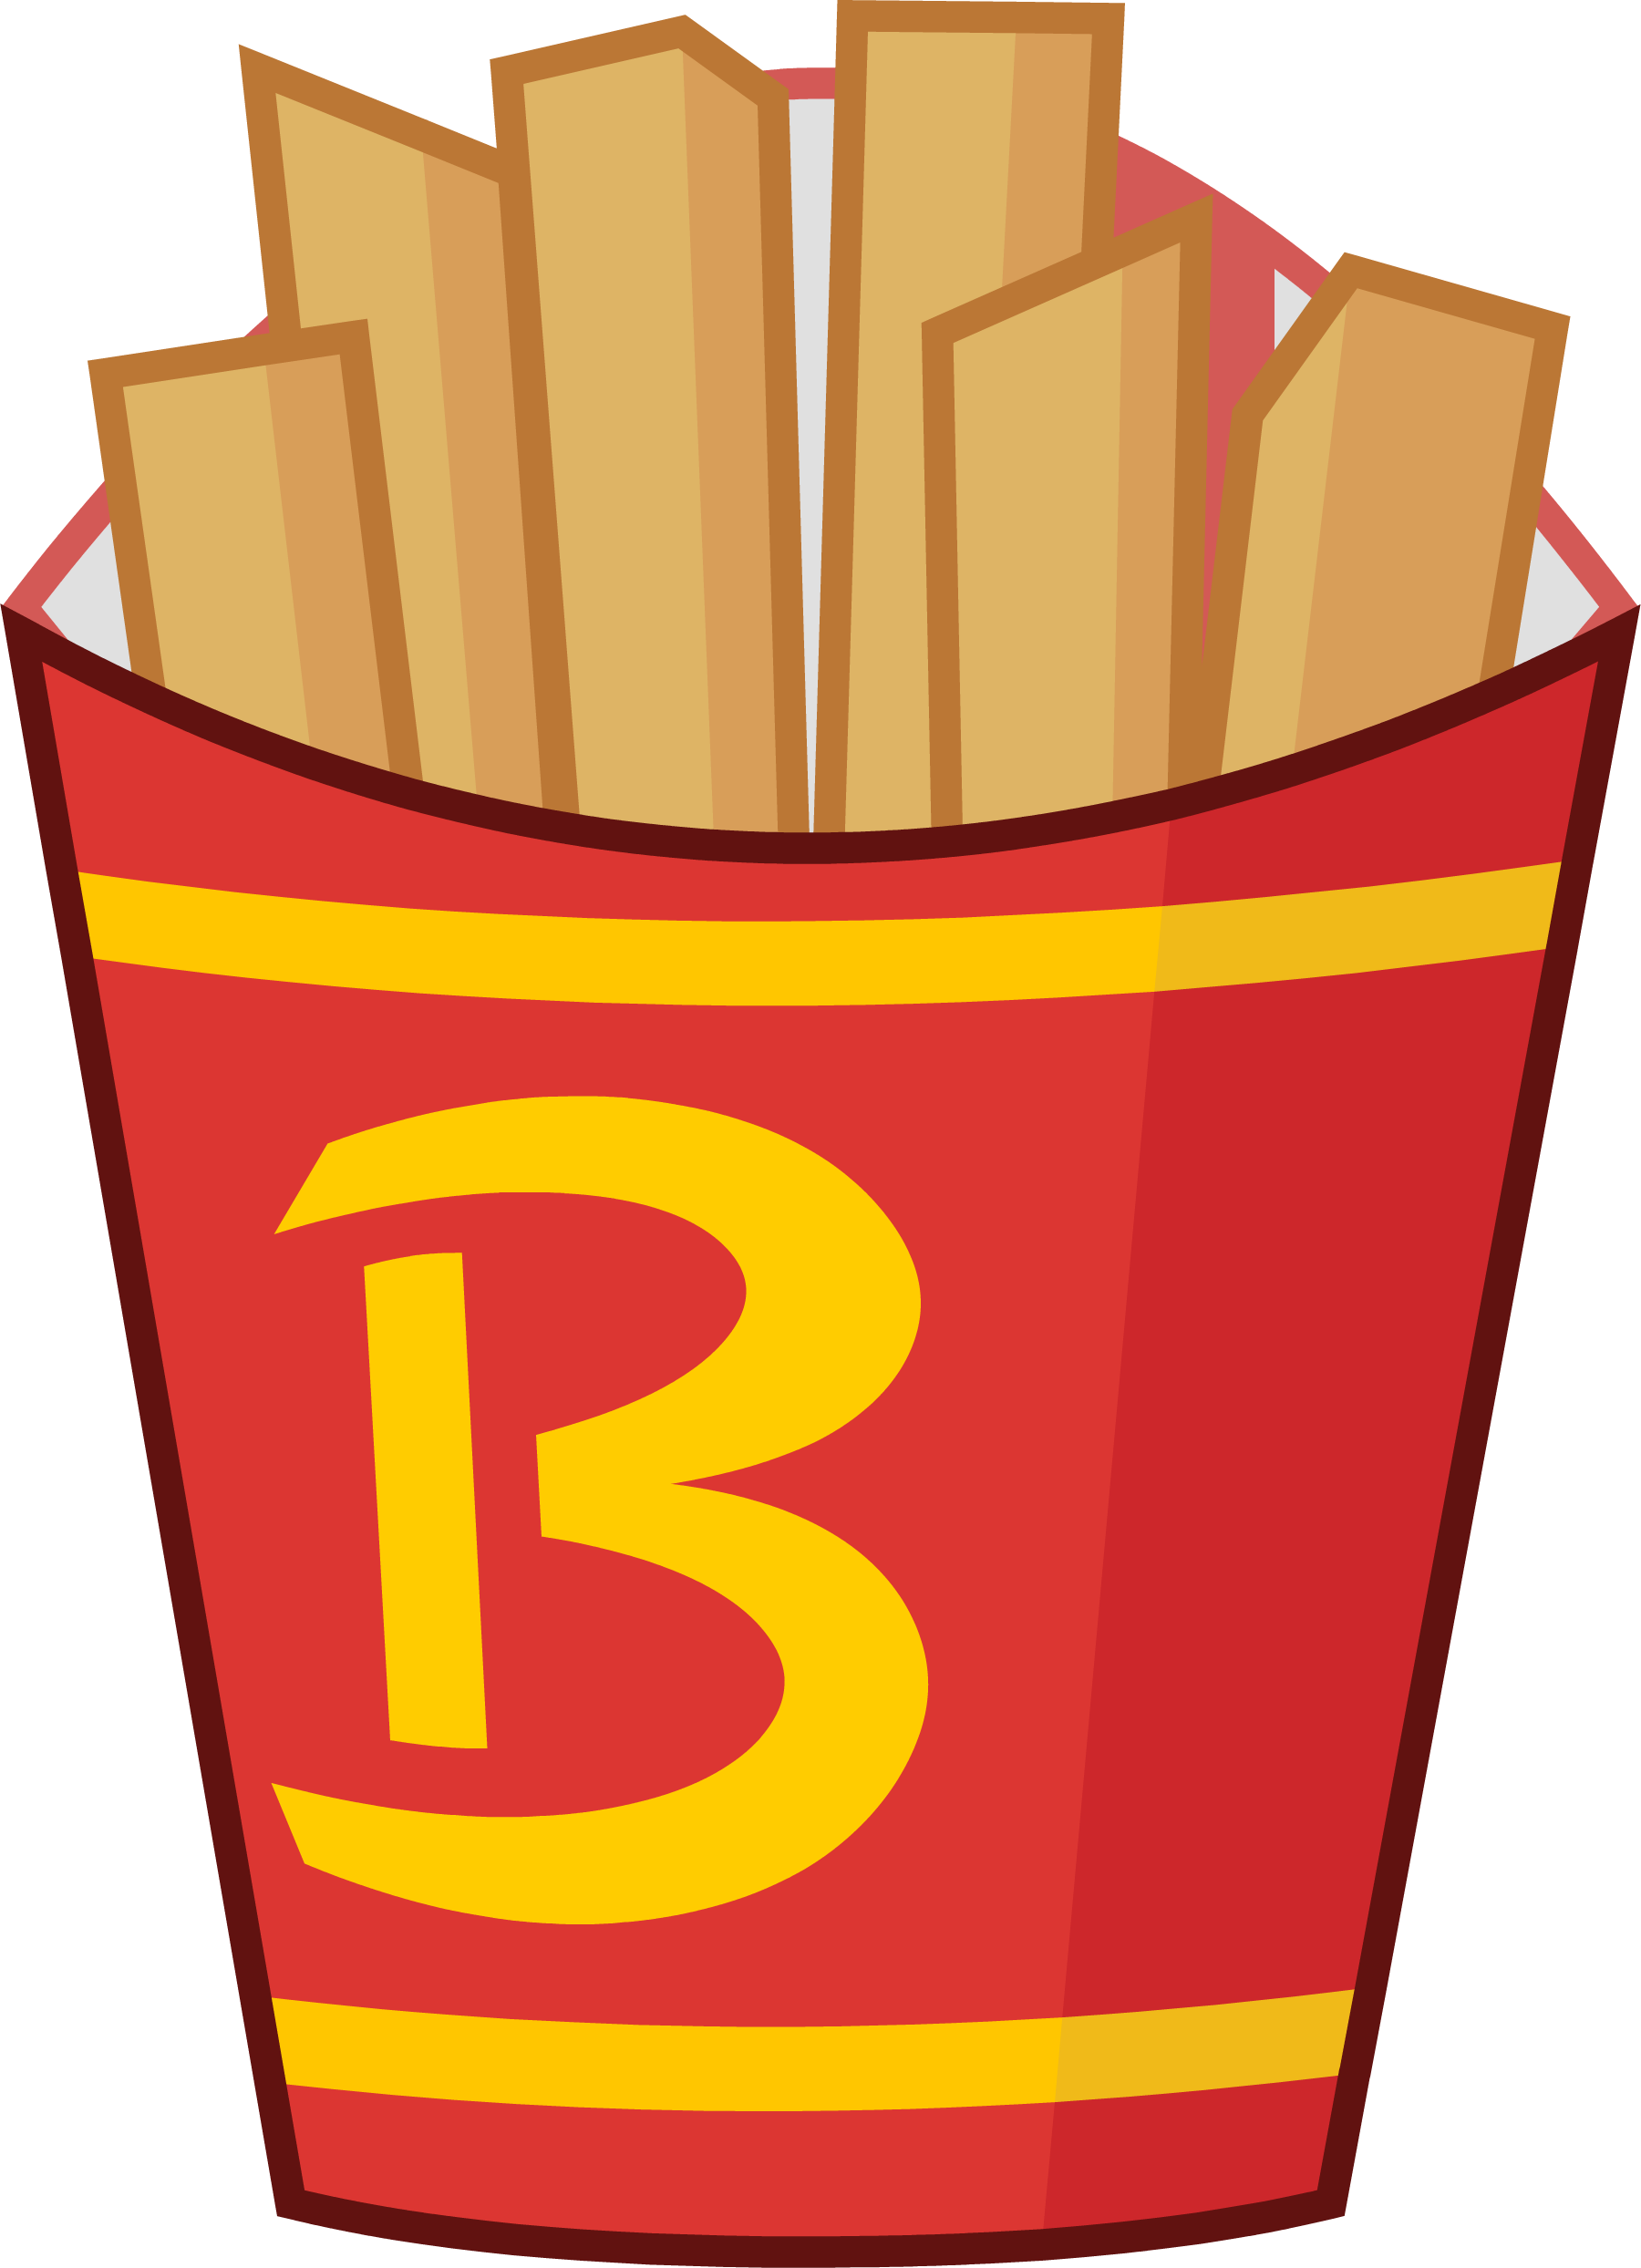 Fries junk food